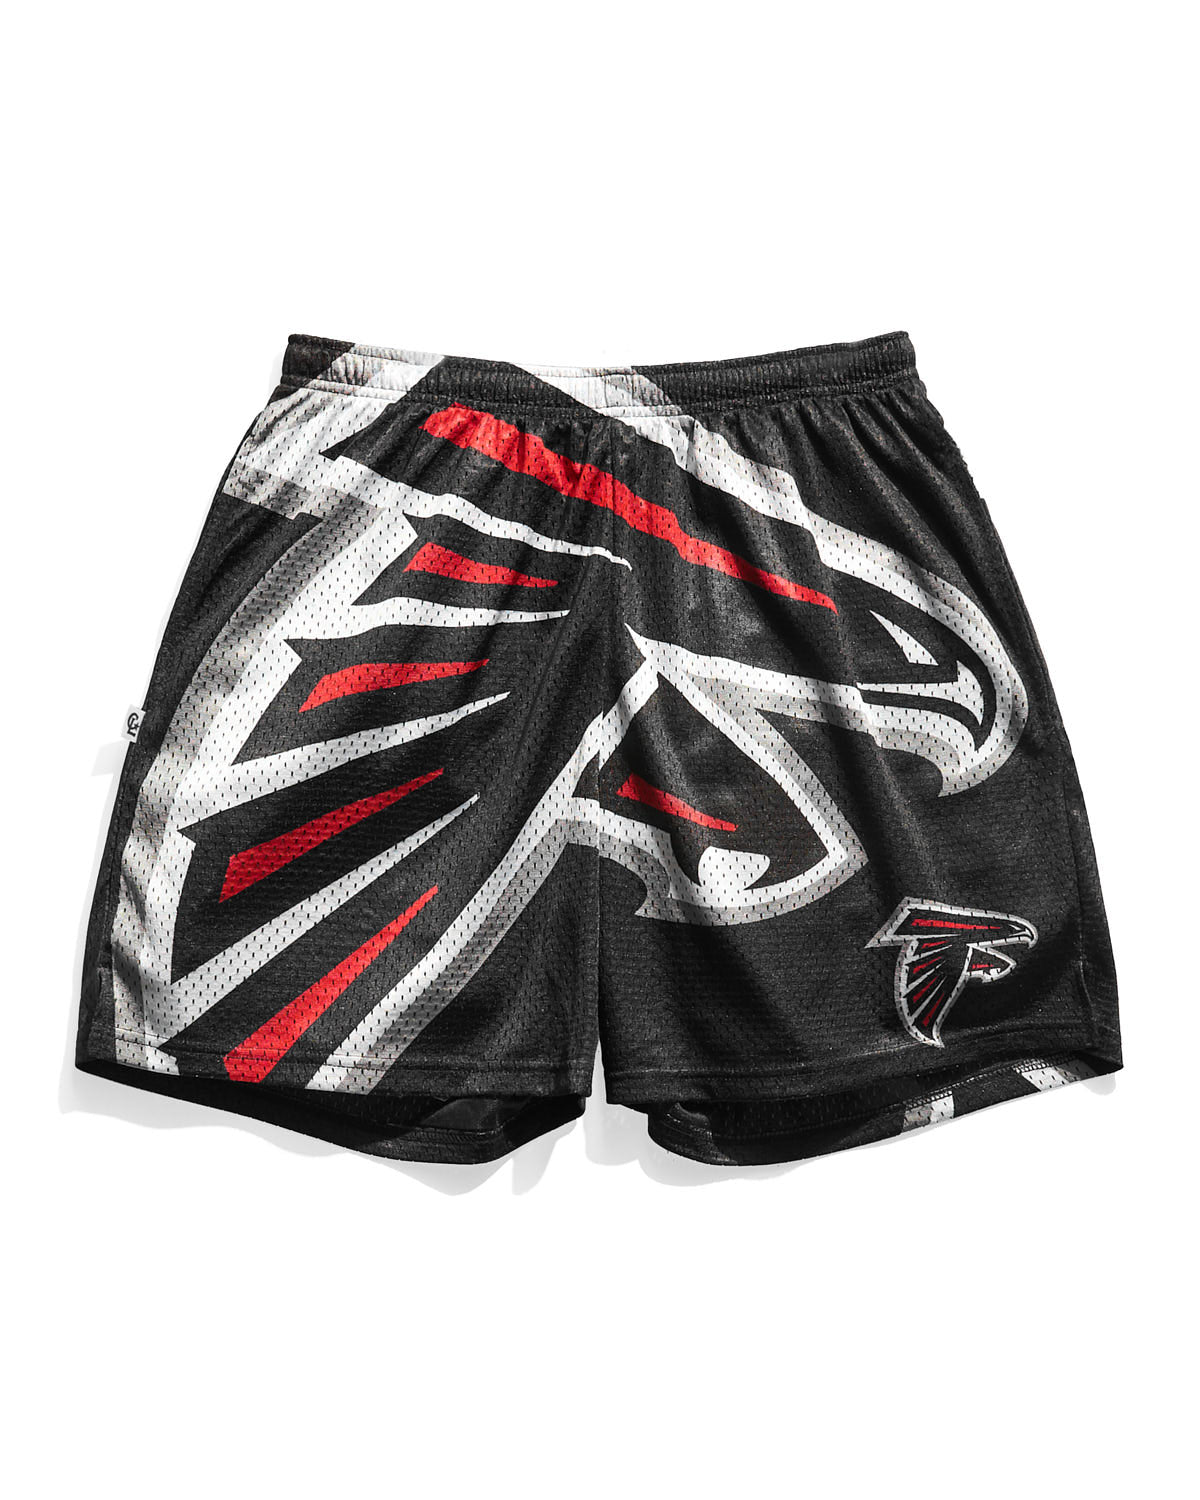 NFL Atlanta Falcons Big Logo Retro Shorts XL